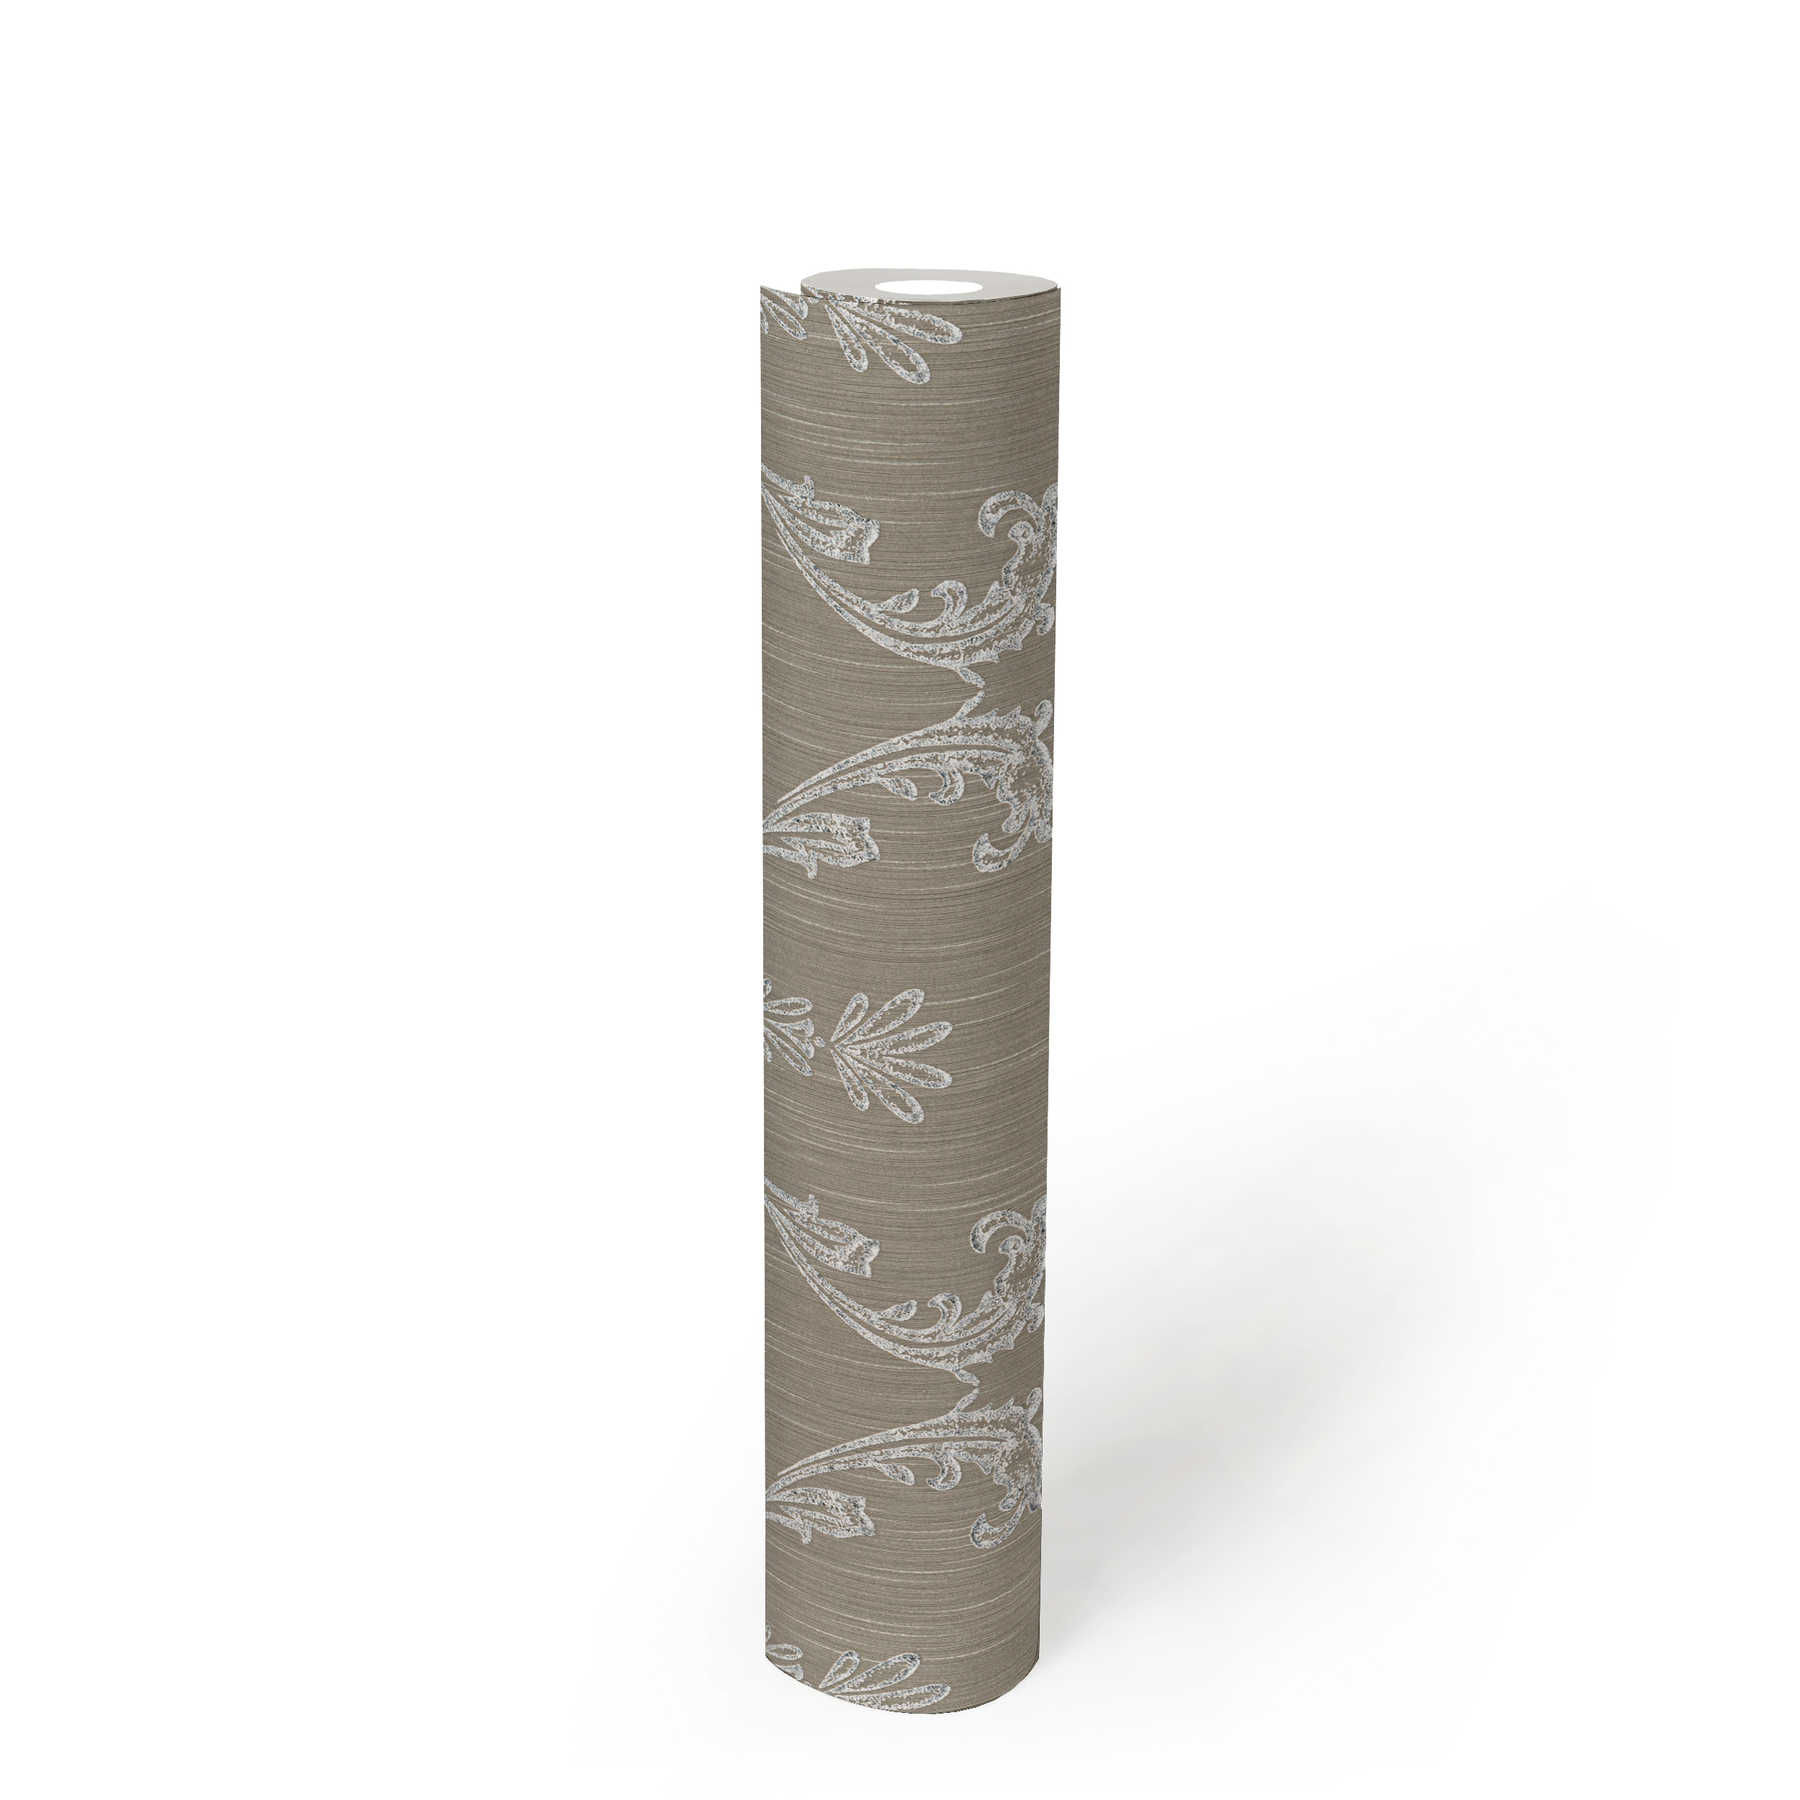             Papier peint ornemental avec éléments floraux argentés - argent, marron
        